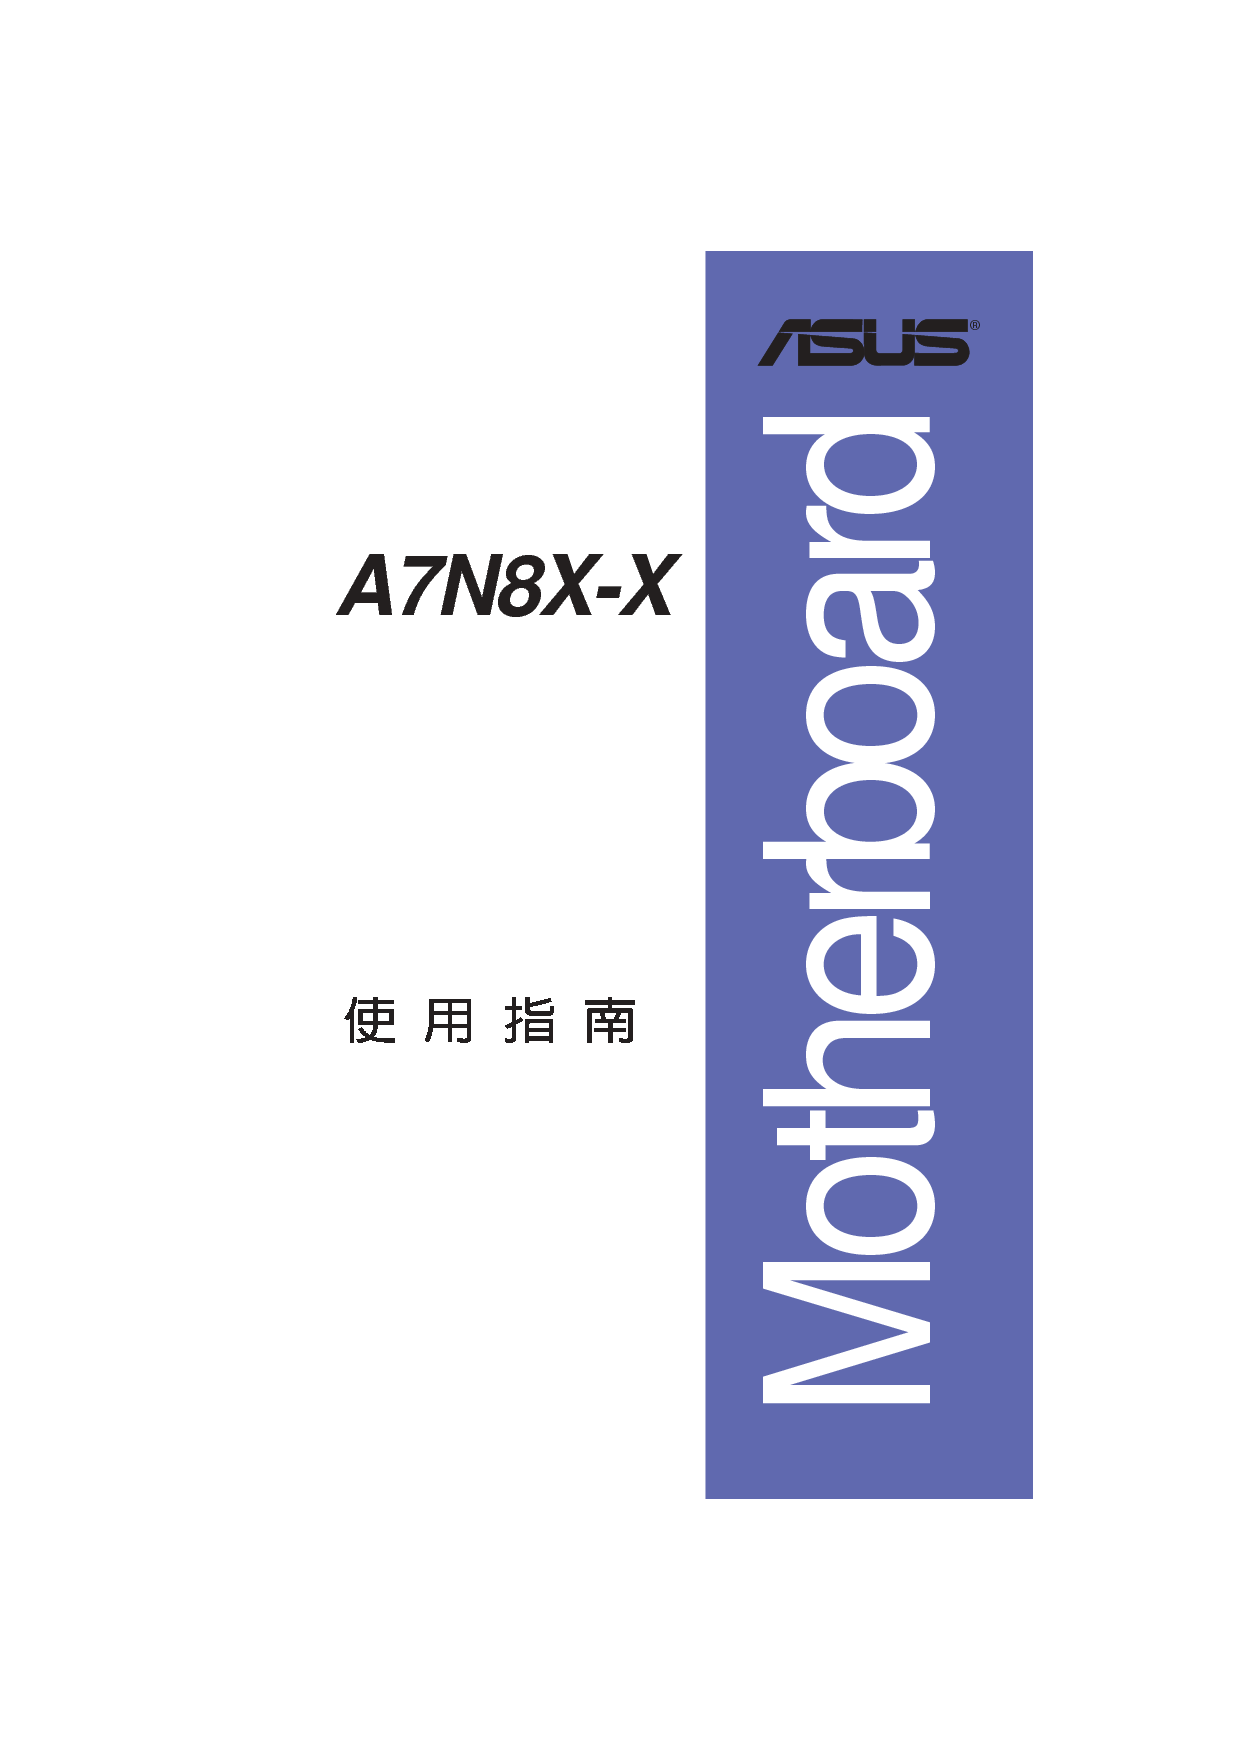 华硕 Asus A7N8X-X 用户手册 封面